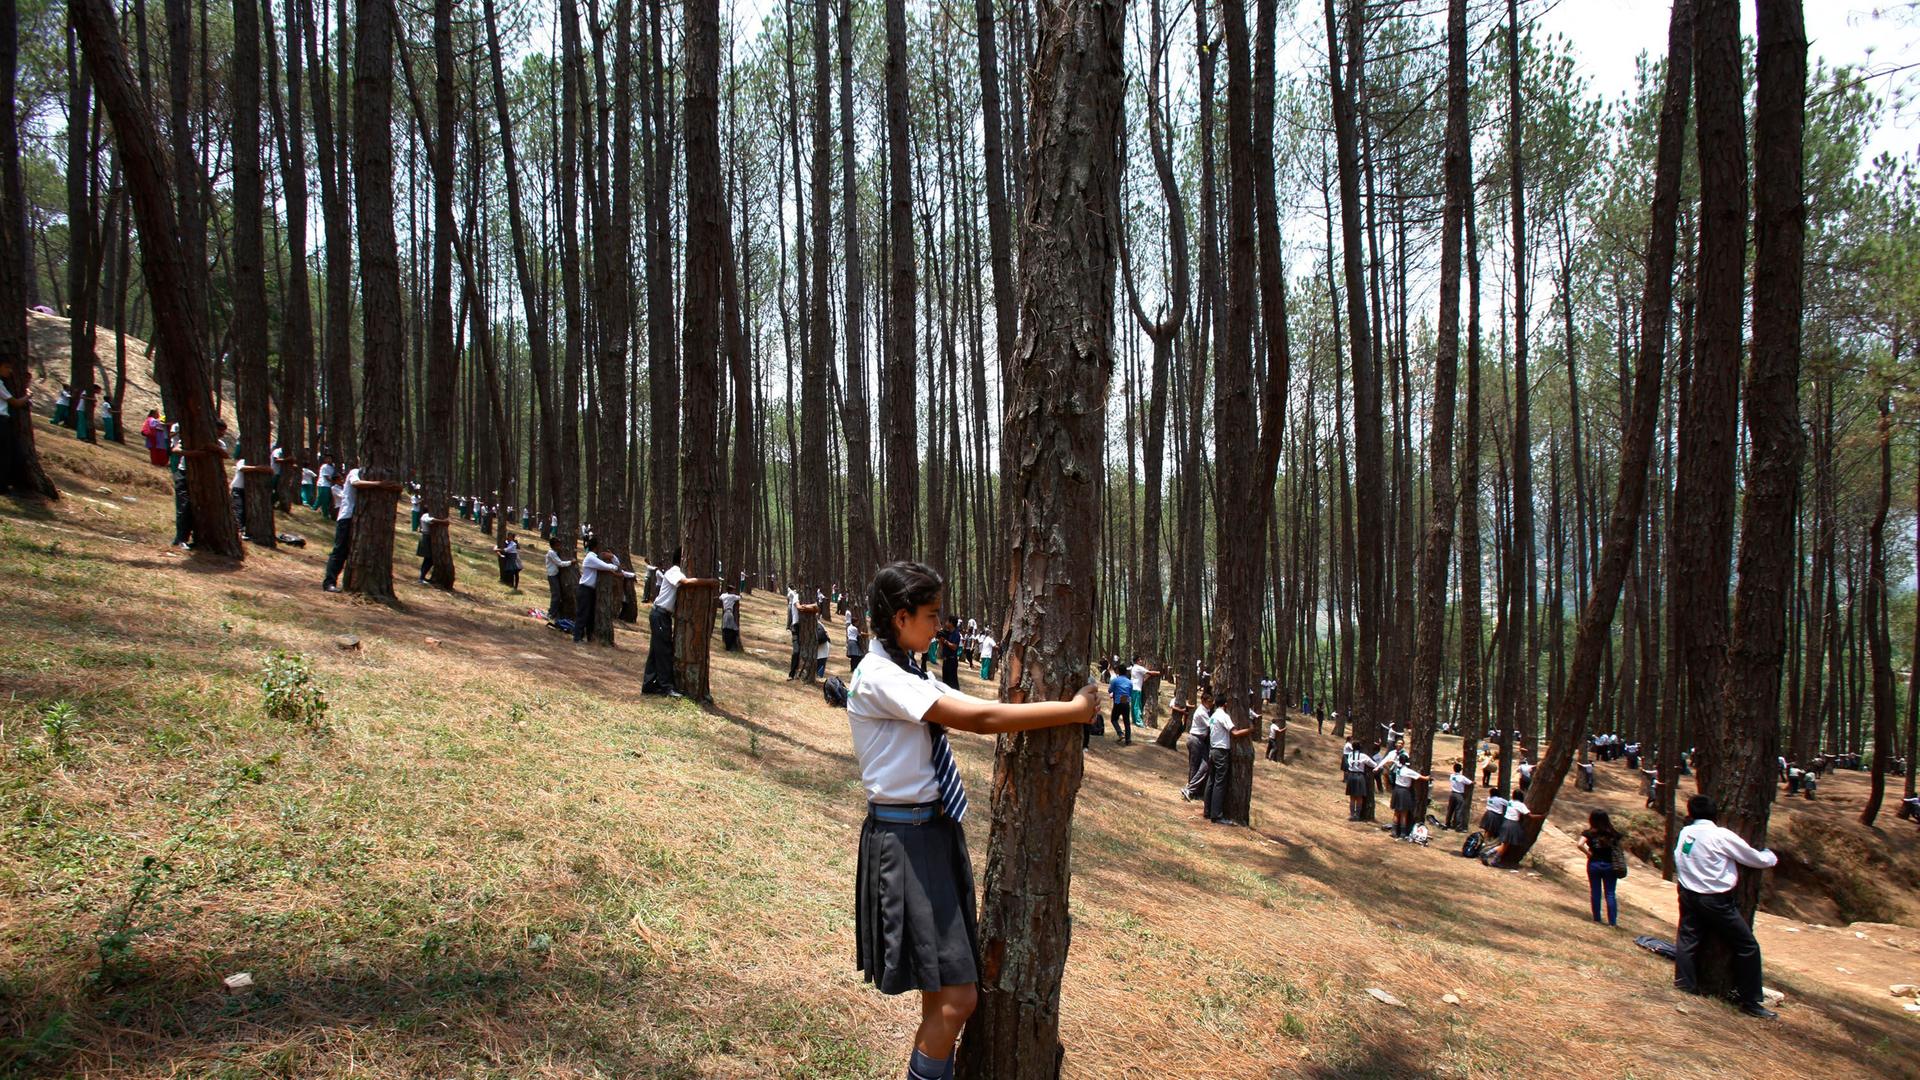 Viele junge Menschen umarmen Bäume in einem Wald